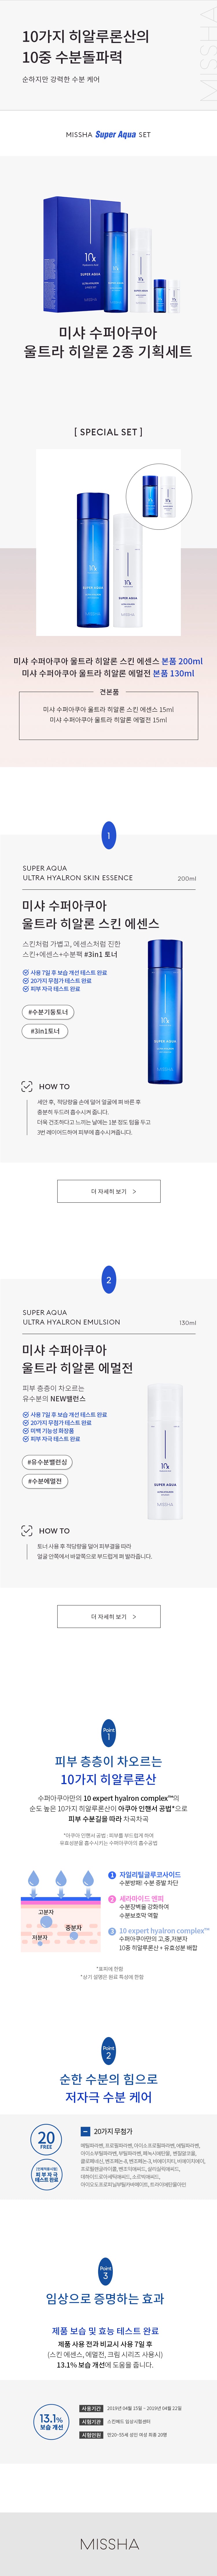 Missha_Super Aqua Ultra Hyalon 2pcs Special Set_1